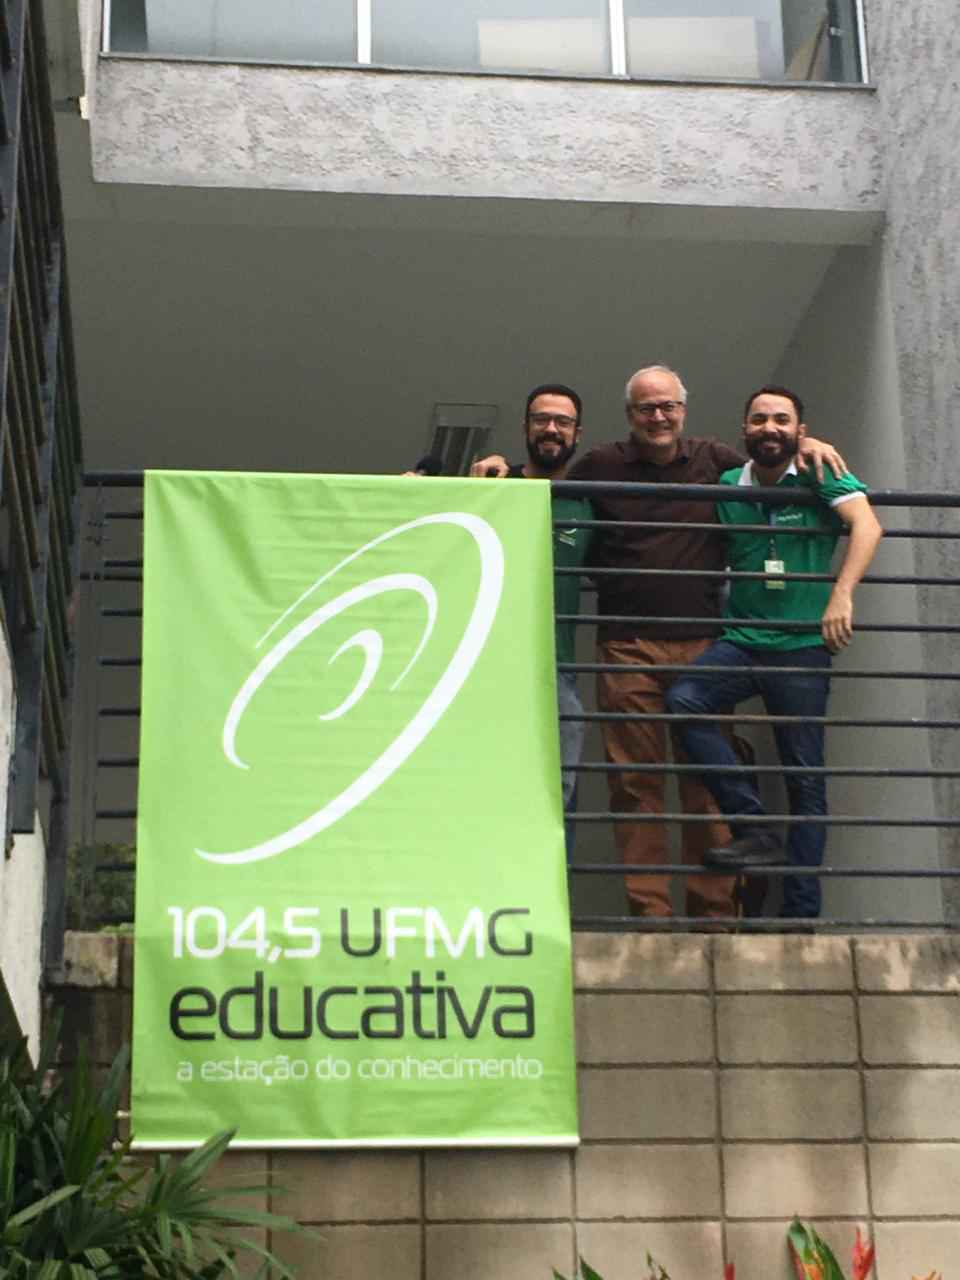 O apresentador do Expresso 104,5, Filipe Sartoreto, o Pró-Reitor Tarcísio Mauro Vago e o operador de áudio, Breno Rodrigues, na transmissão da UFMG Educativa no CAD II